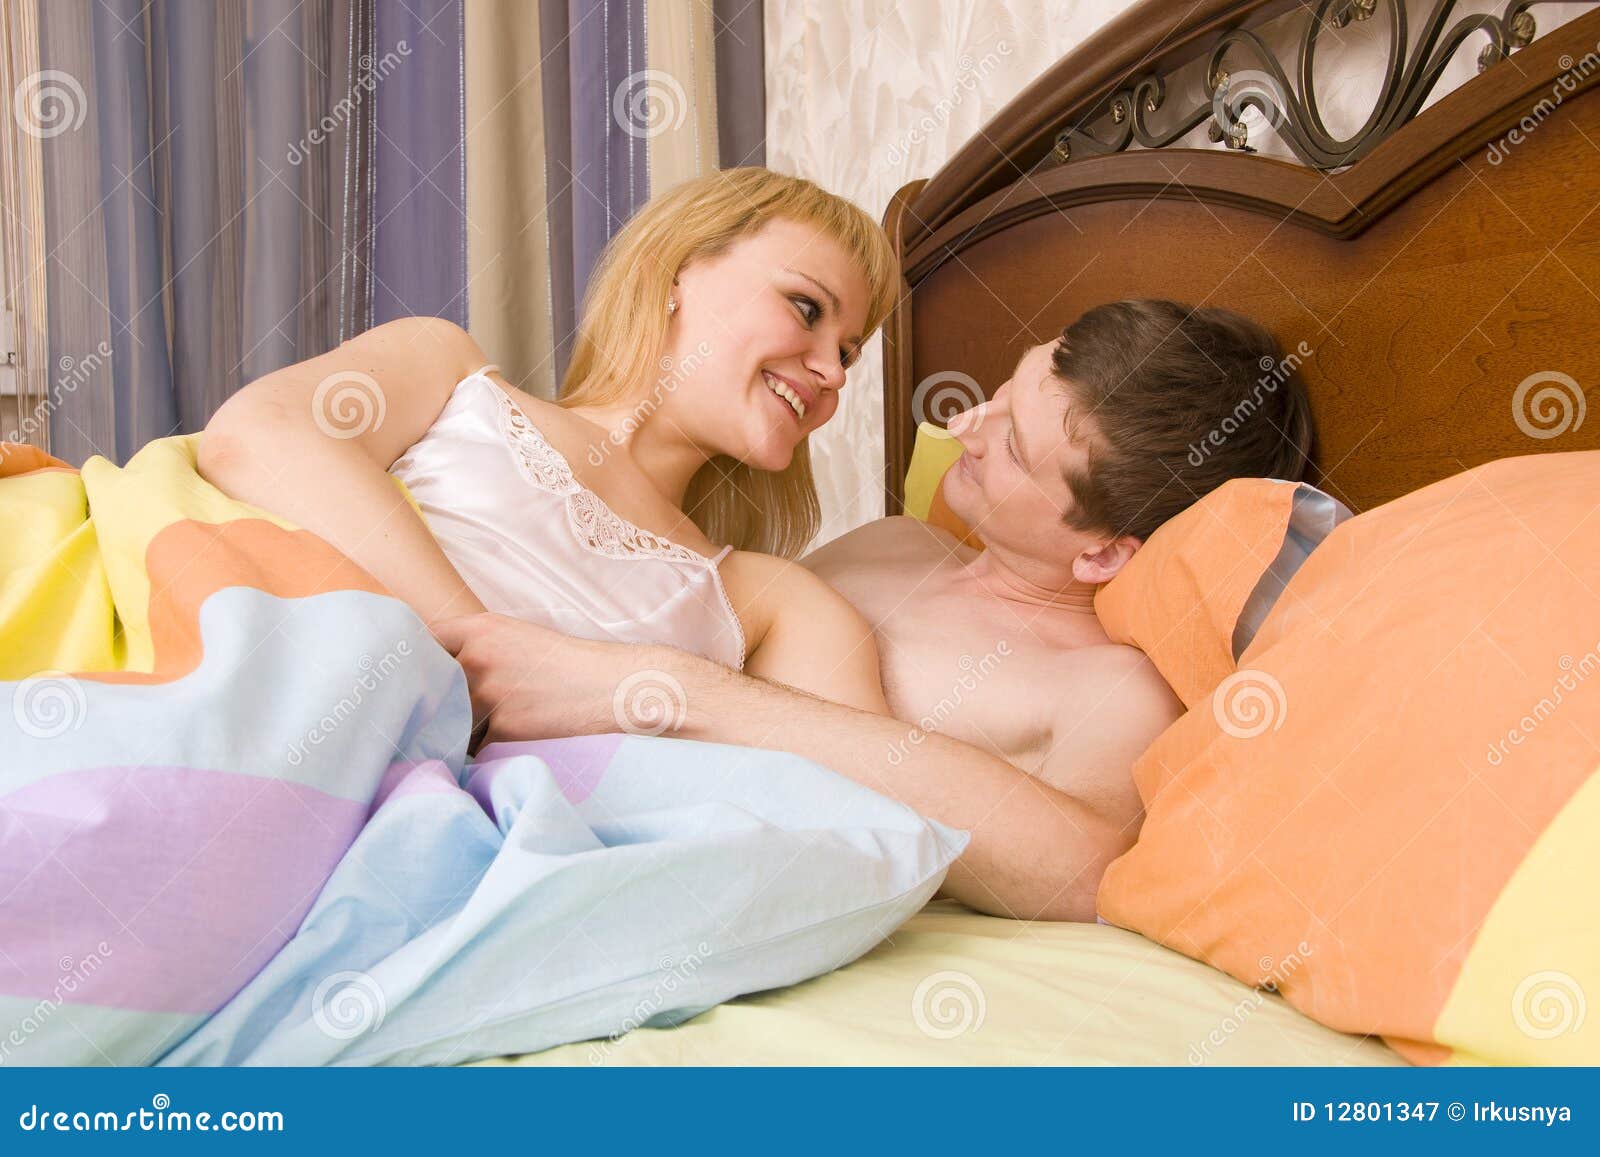 сын увидел мать голой в кровати порно фото 11